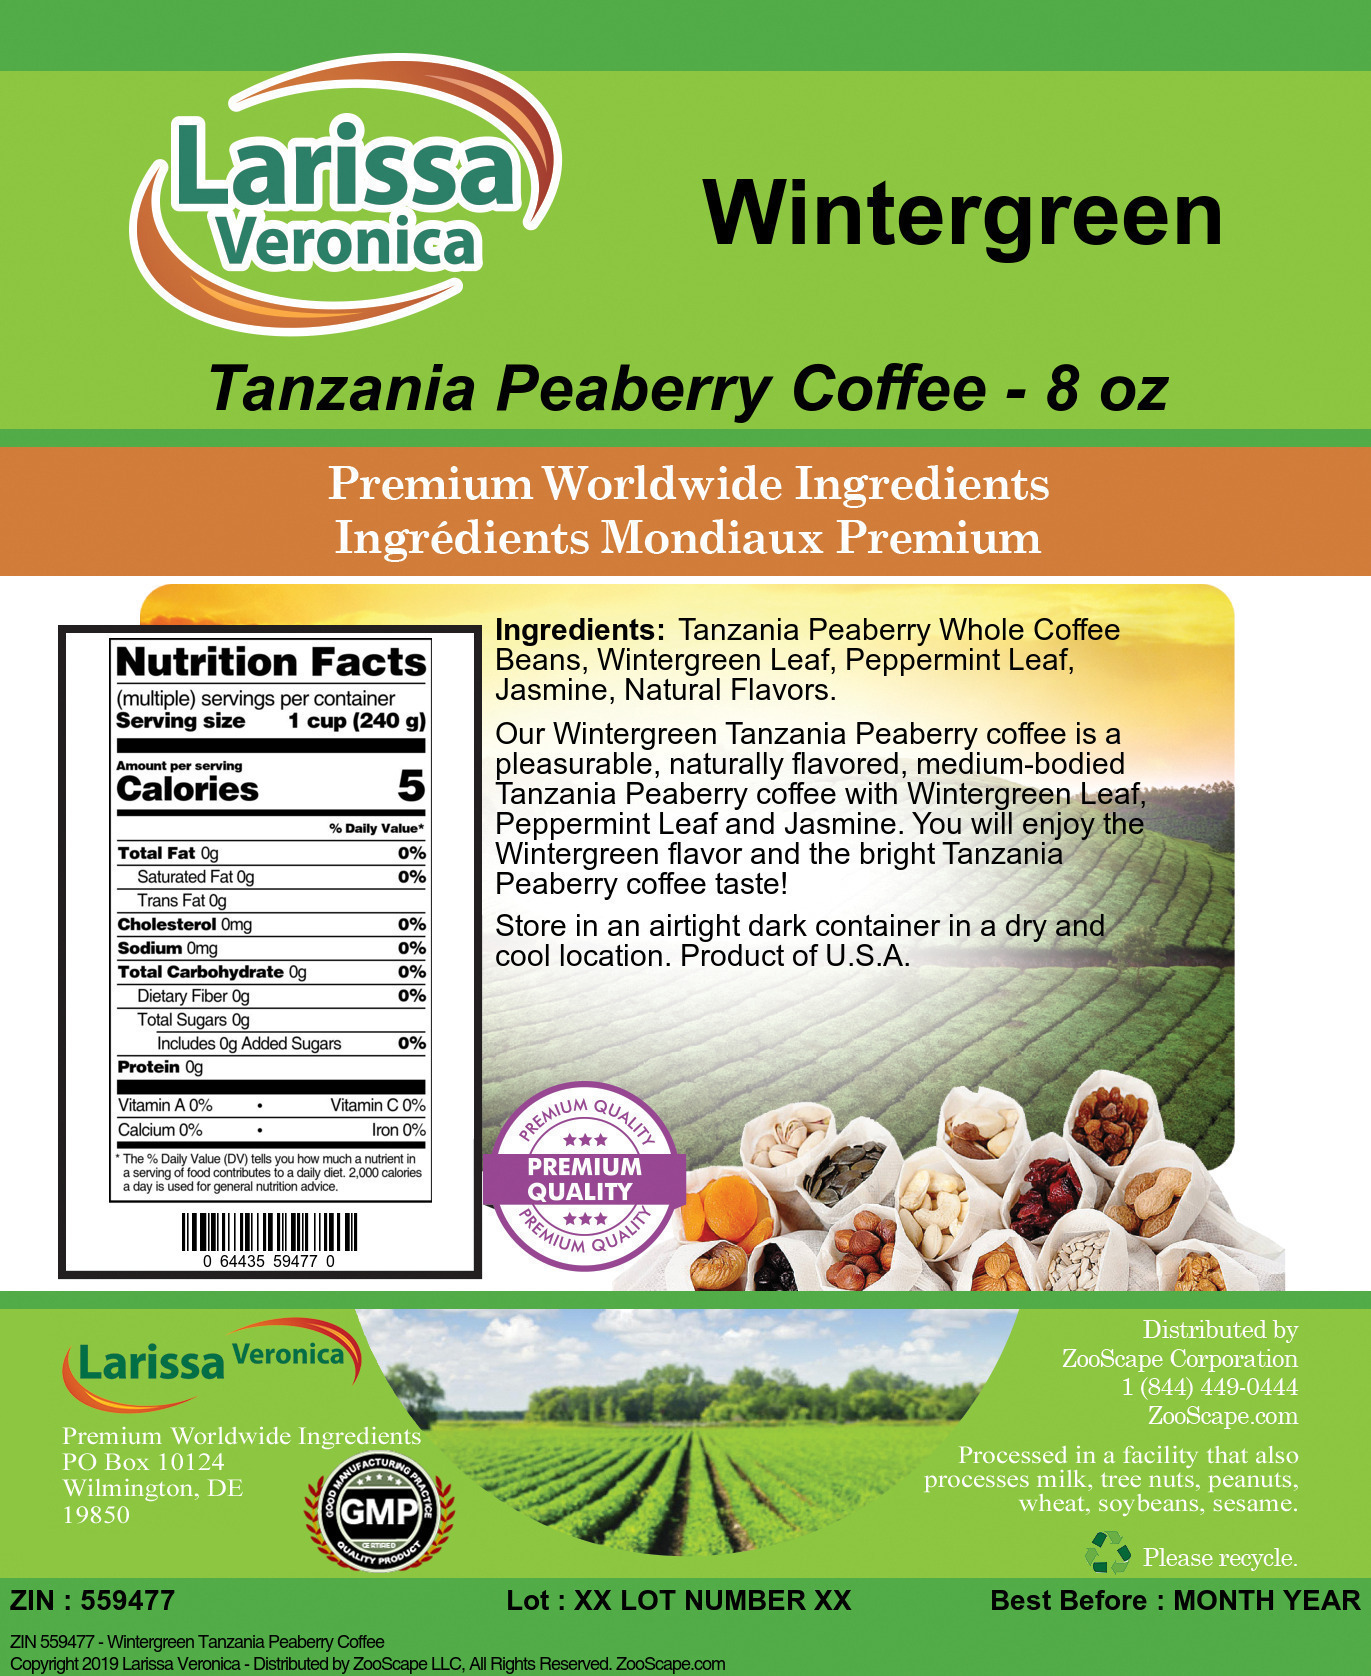 Wintergreen Tanzania Peaberry Coffee - Label